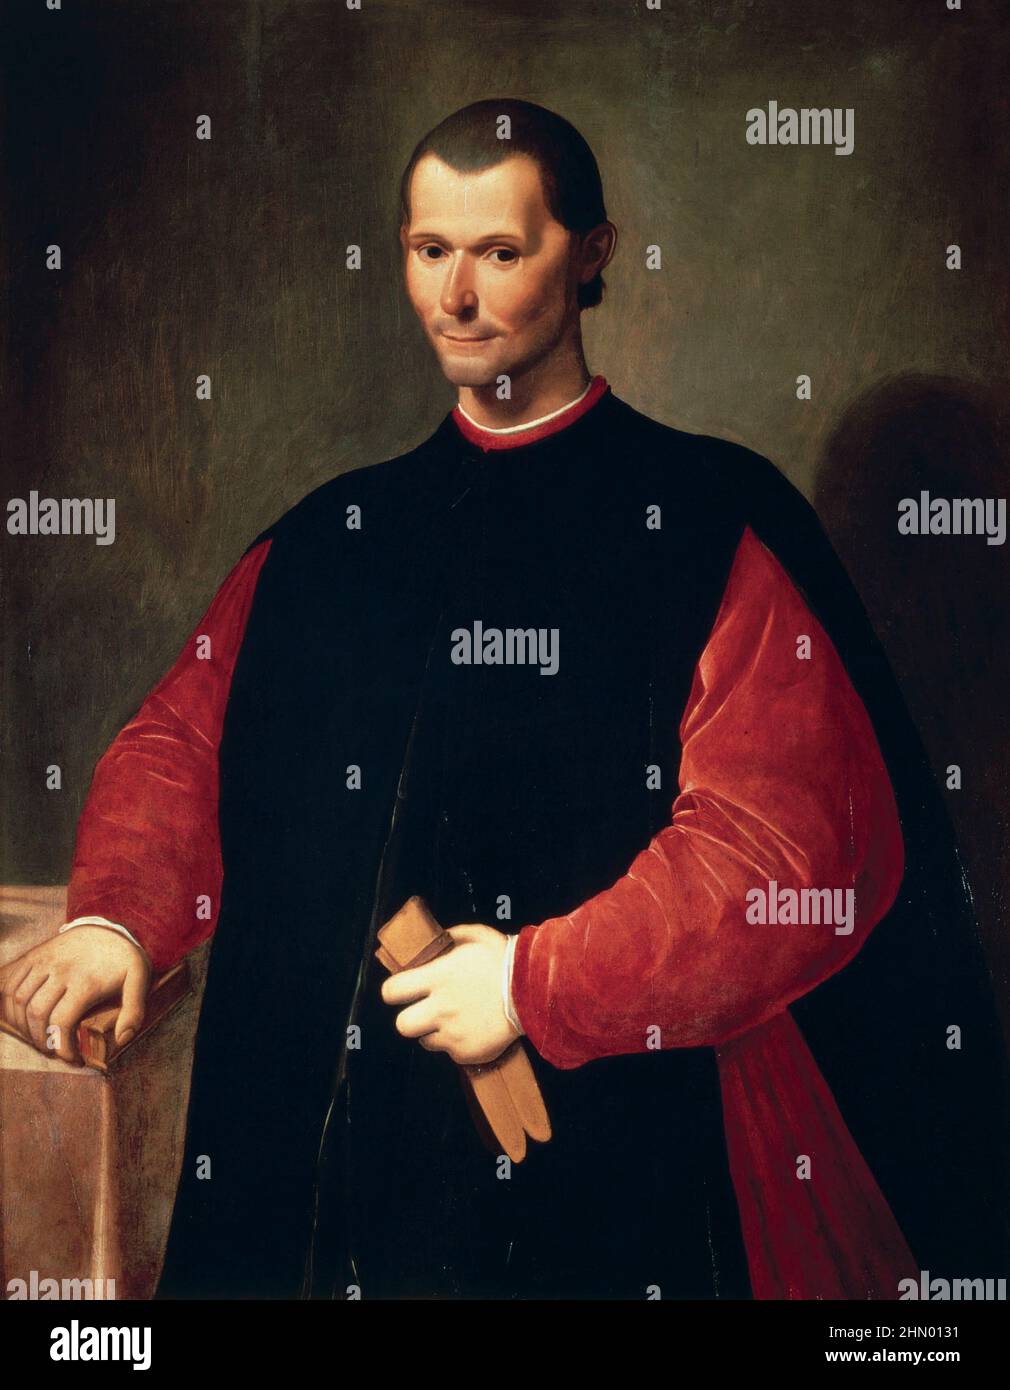 Porträt von Niccolò Machiavelli(1469–1527) Künstler Santi di Tito (1536–1603) Italienischer Diplomat, Autor, Philosoph, Historiker. Berühmt für seine politische Abhandlung „der Prinz“ (Il Principe), die 1532 veröffentlicht wurde. Lage Palazzo Vecchio Stockfoto